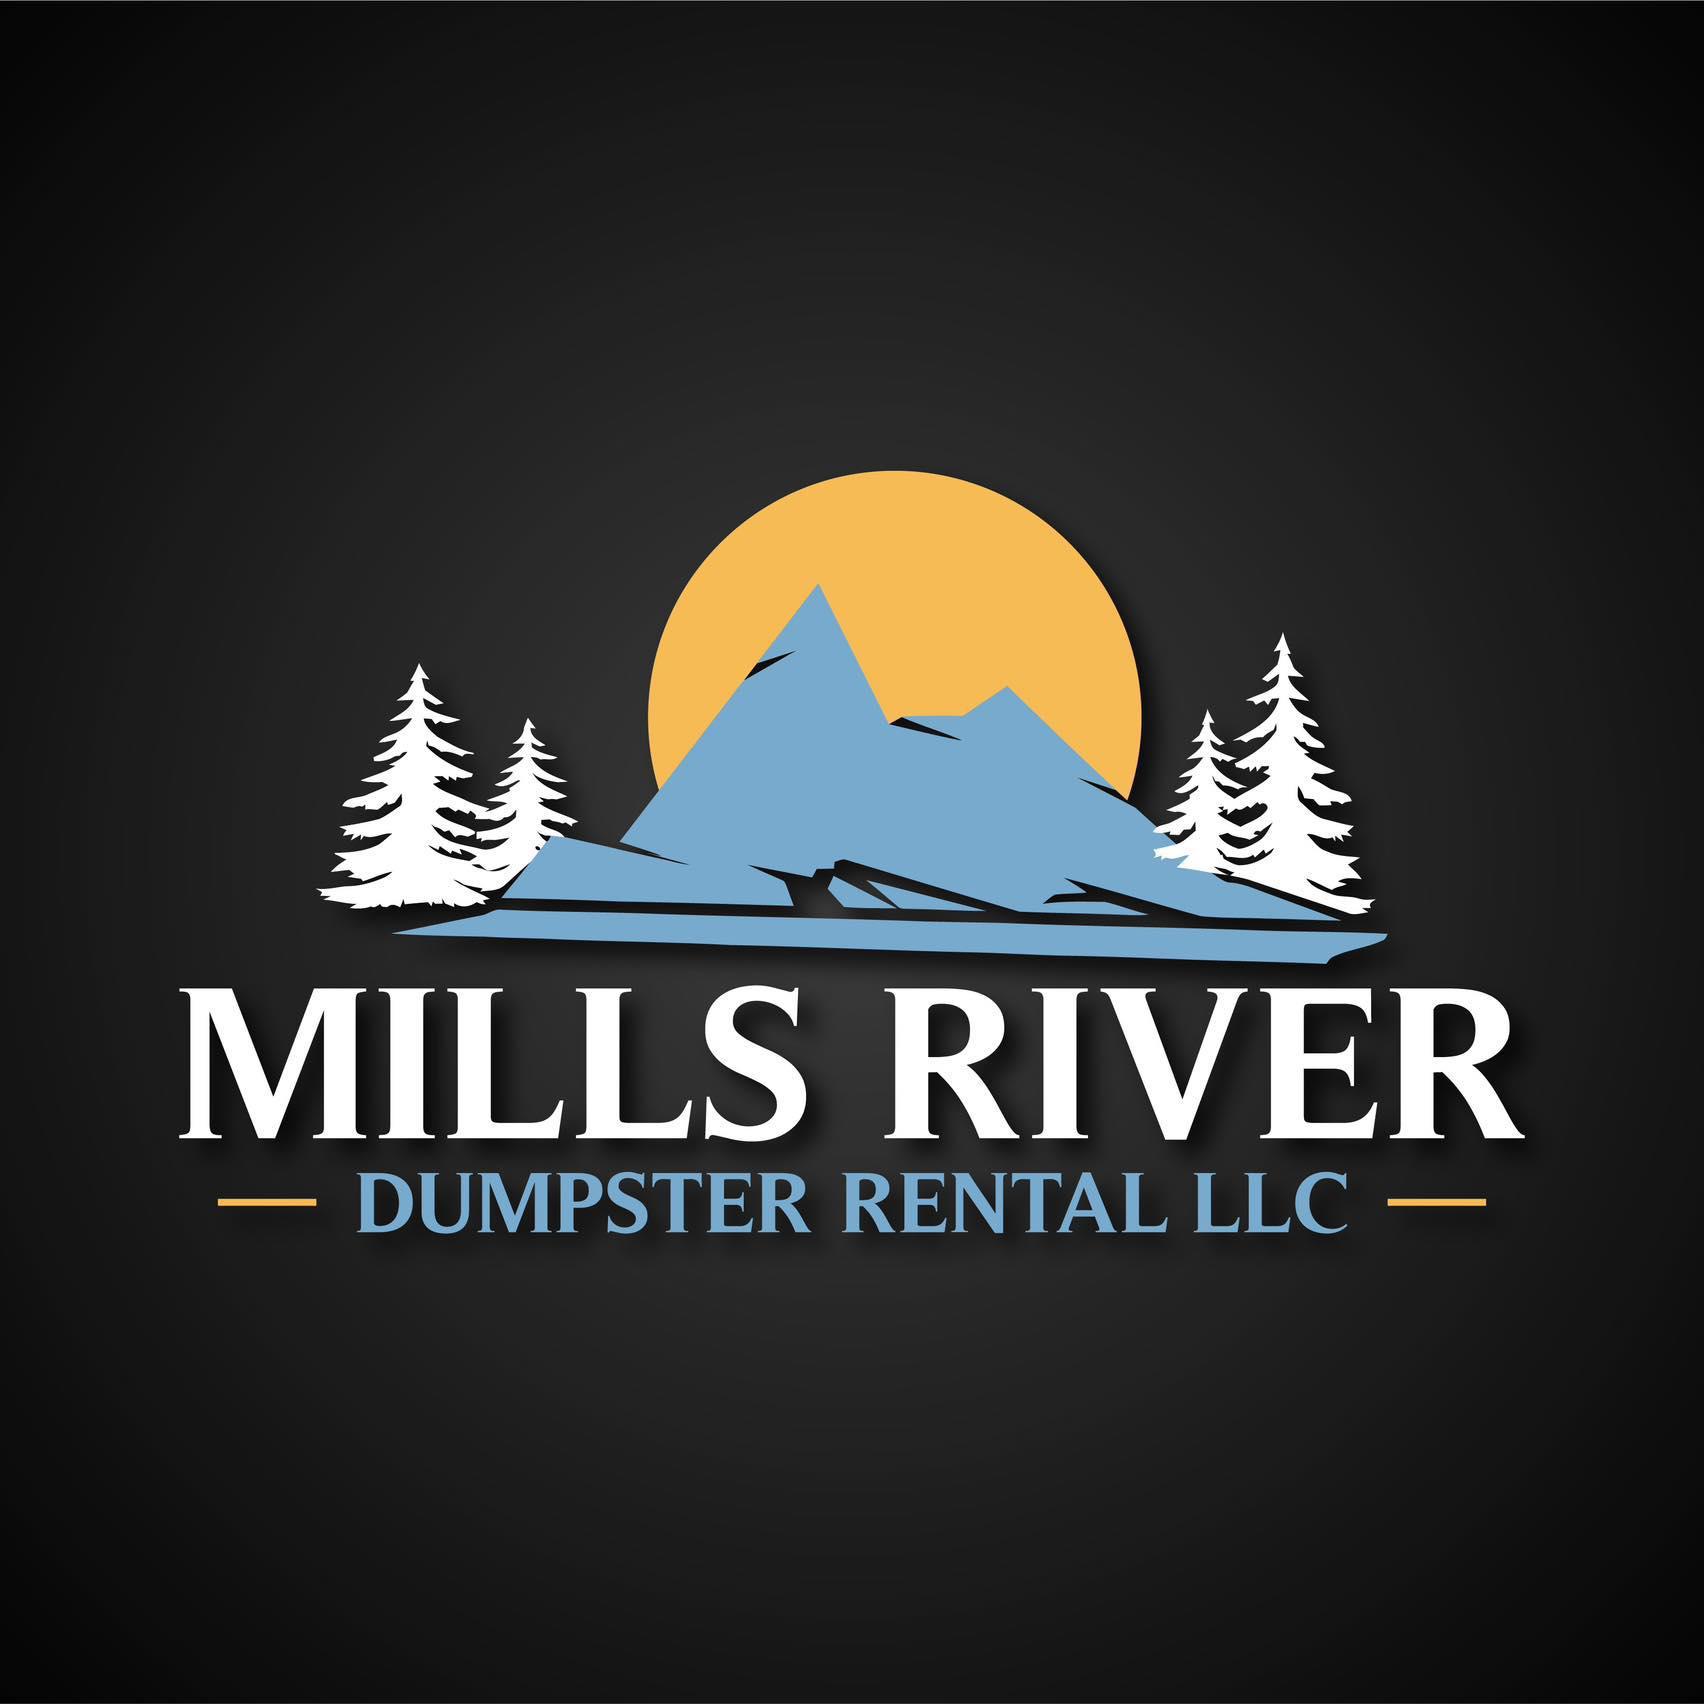 Mills River Dumpster Rental - Mills River, NC - (828)702-6679 | ShowMeLocal.com